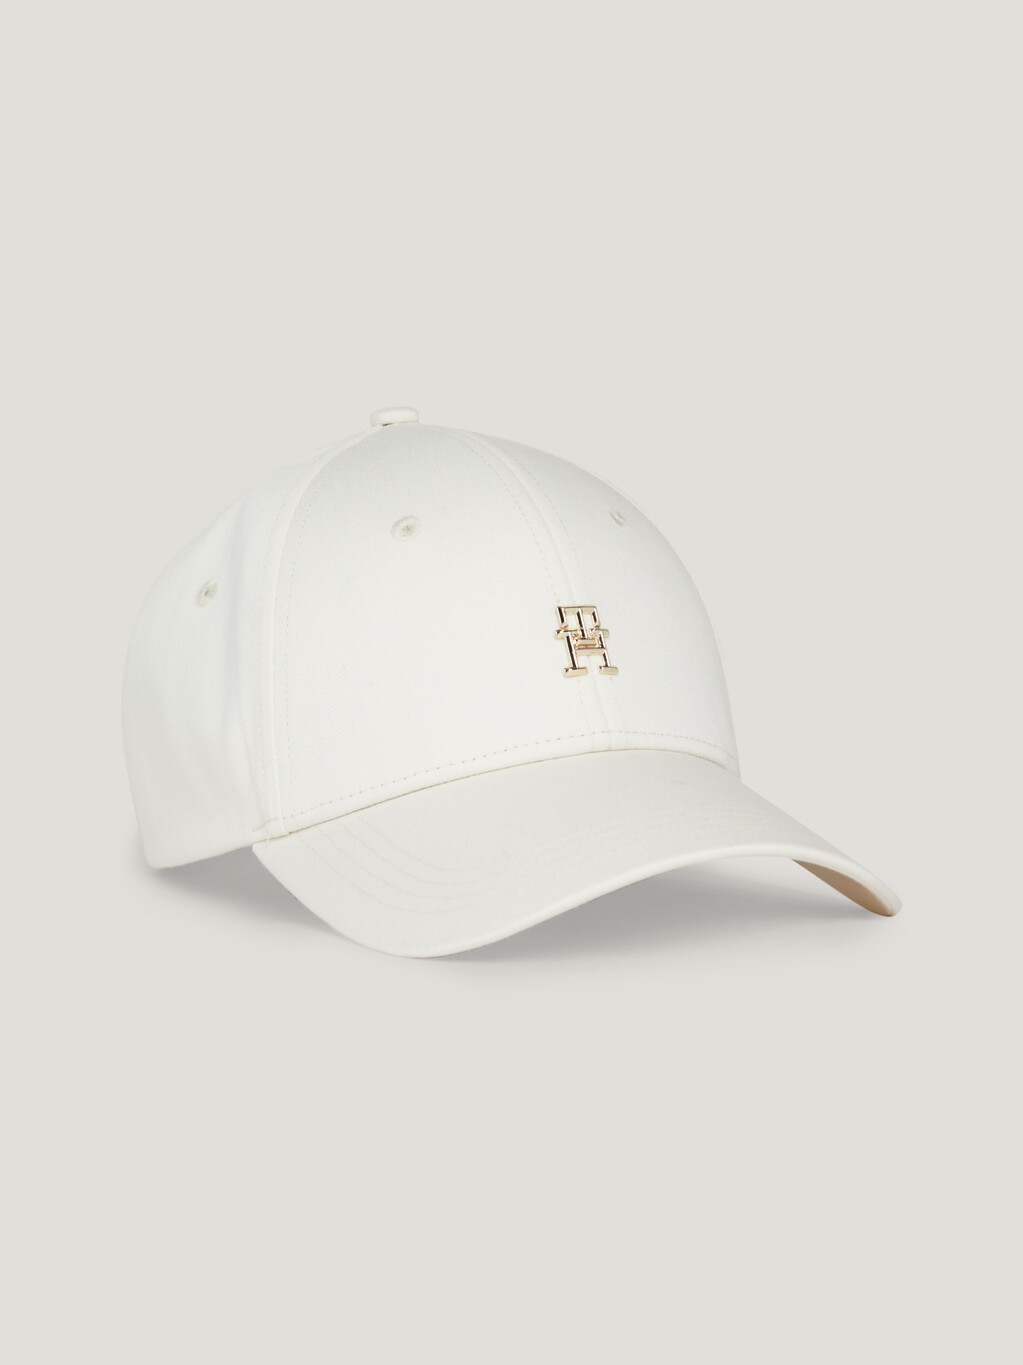 Essential Chic TH Monogram棒球帽, Calico, hi-res